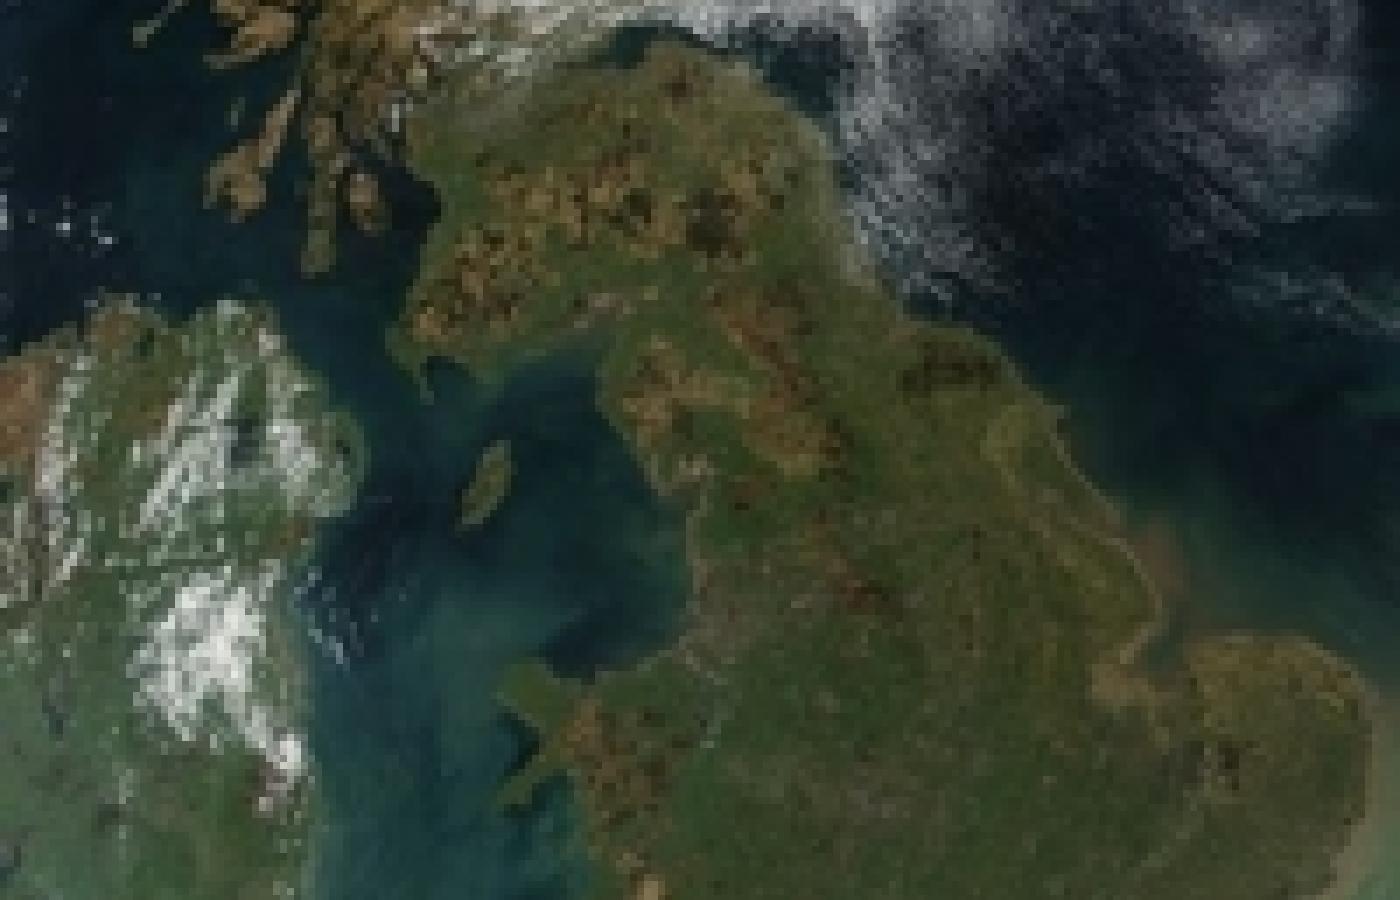 Wielka Brytania, zdjęcie satelitarne © NASA